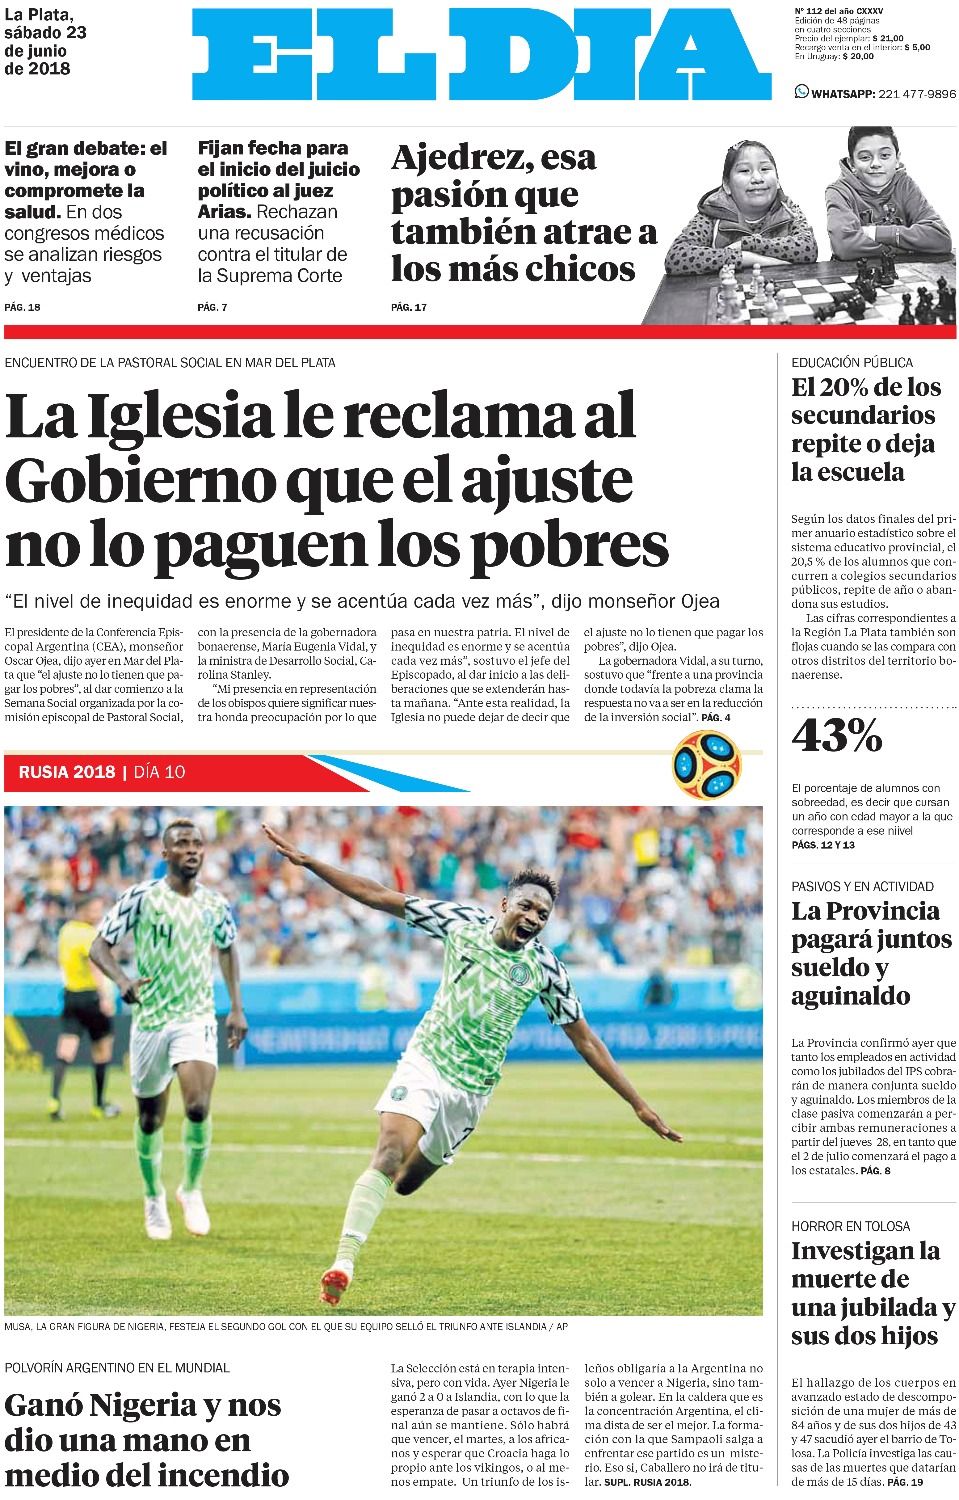 La prensa argentina cree en el "milagro": Nigeria"